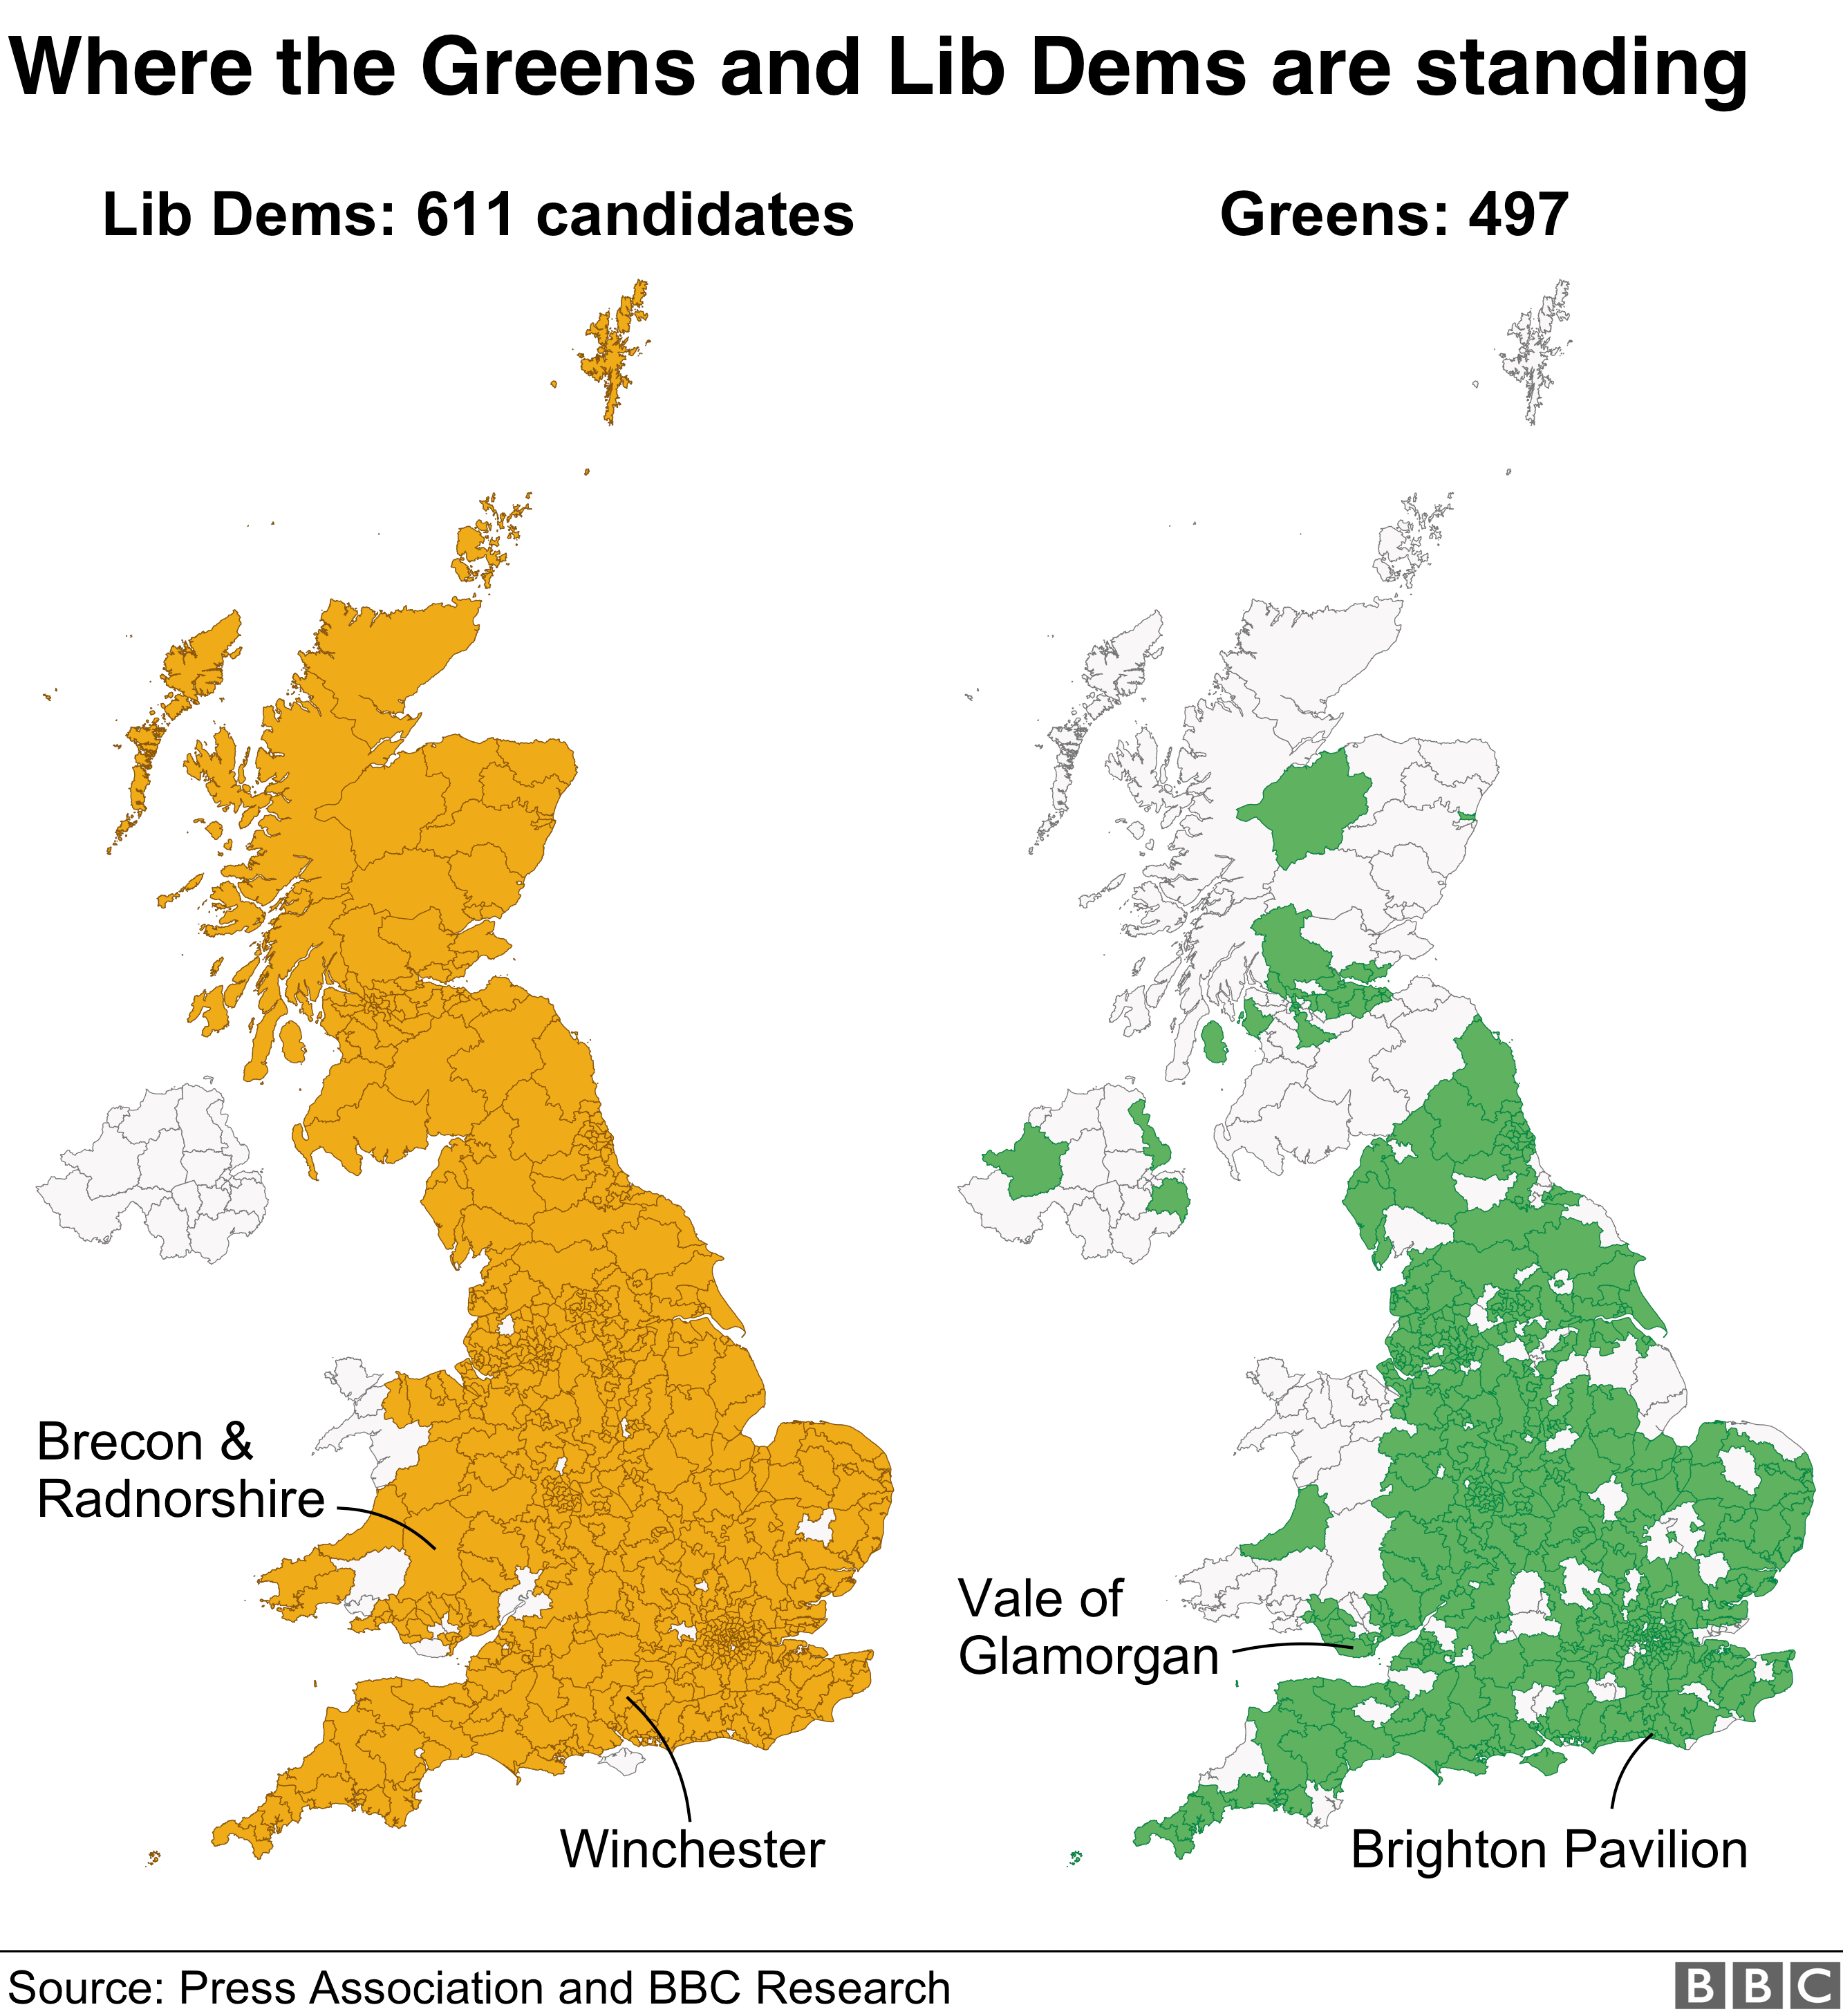 Либеральные демоны (611 кандидатов) отстают от зеленых (497 кандидатов) на нескольких местах, а зеленые расплачиваются за расположение других